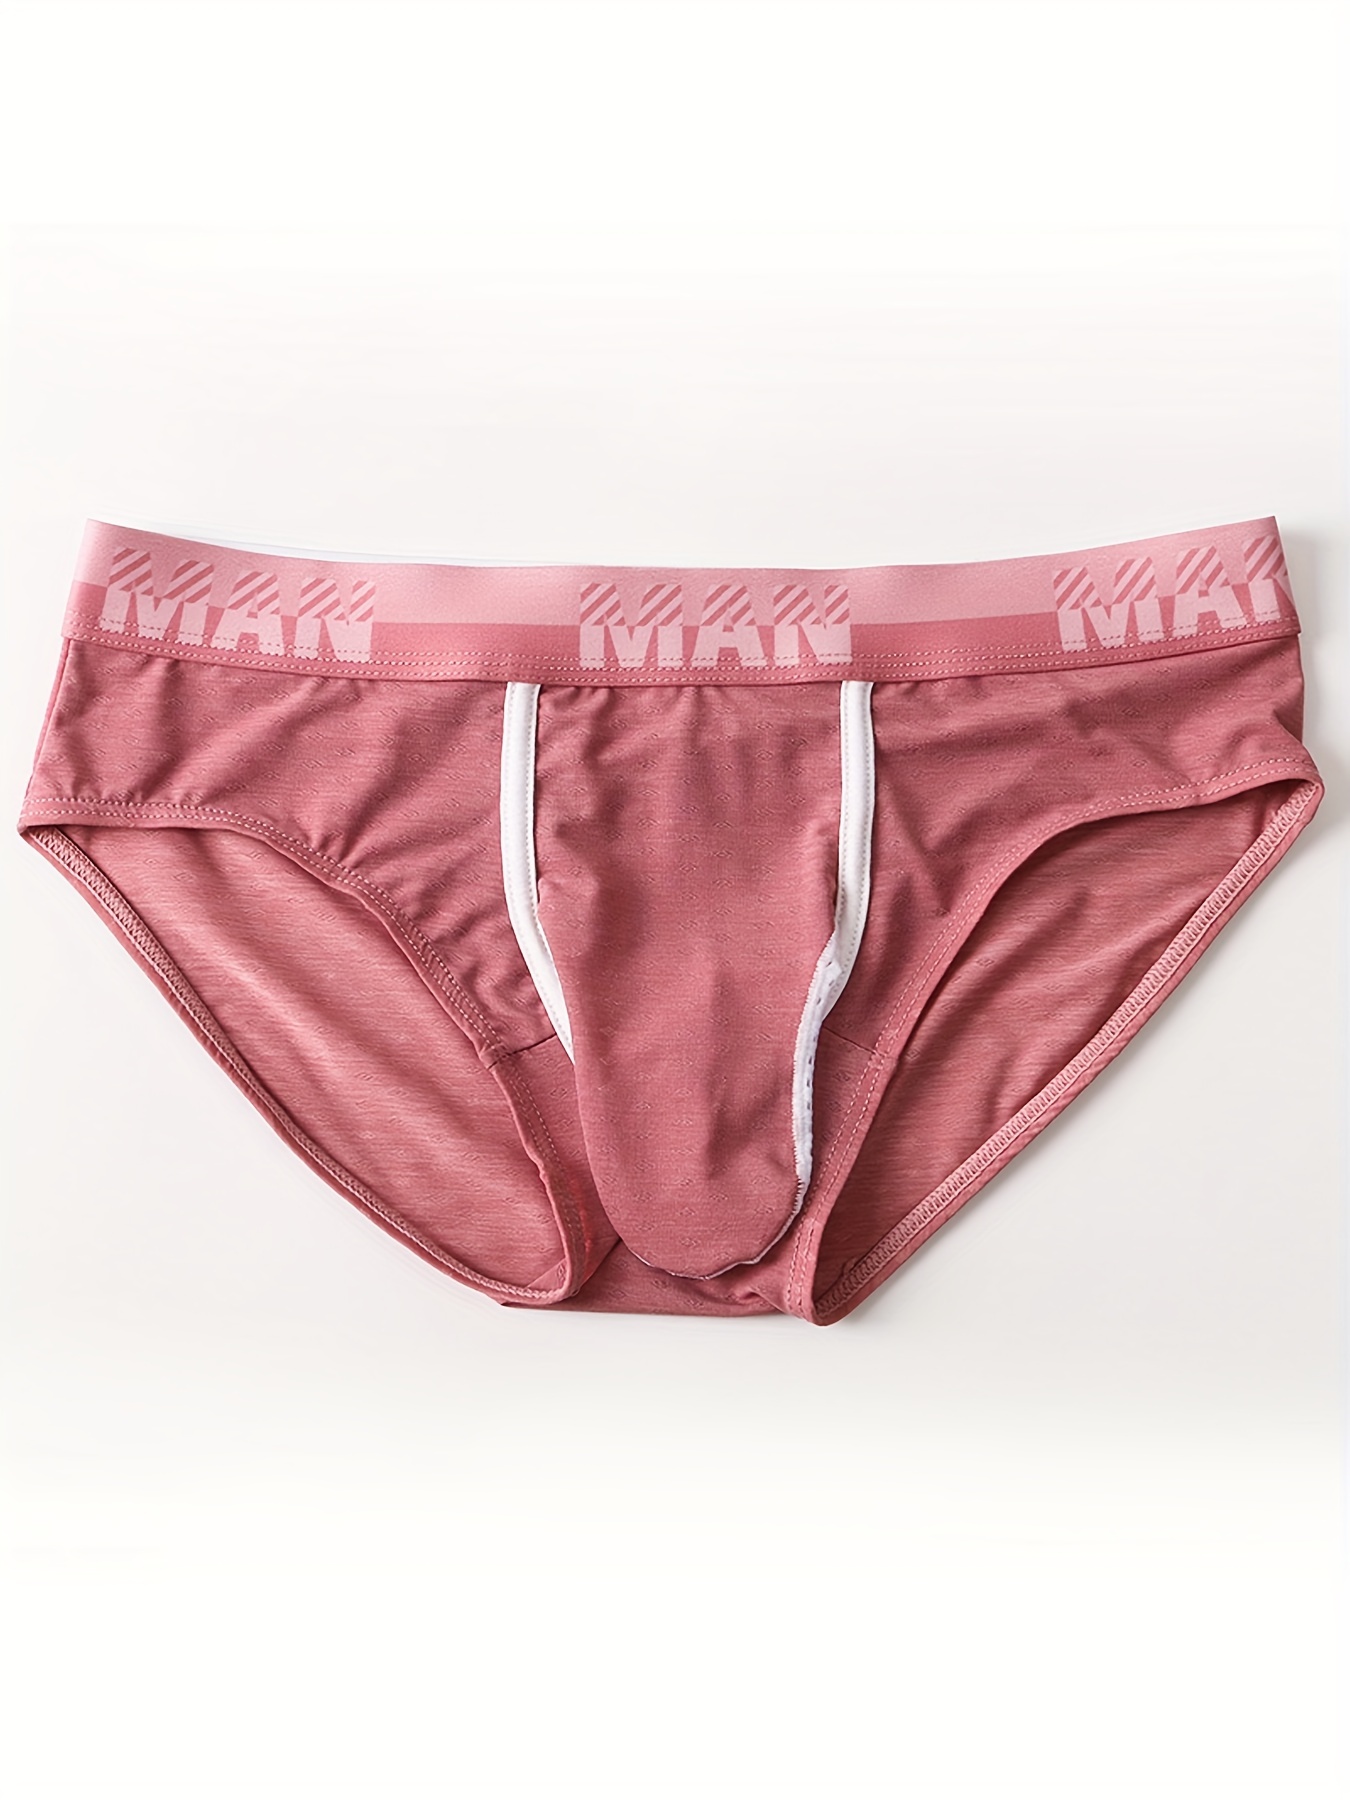 Cheap [ORMP]Sexy Underwear Men Briefs Mens Slips Penis Big Pouch